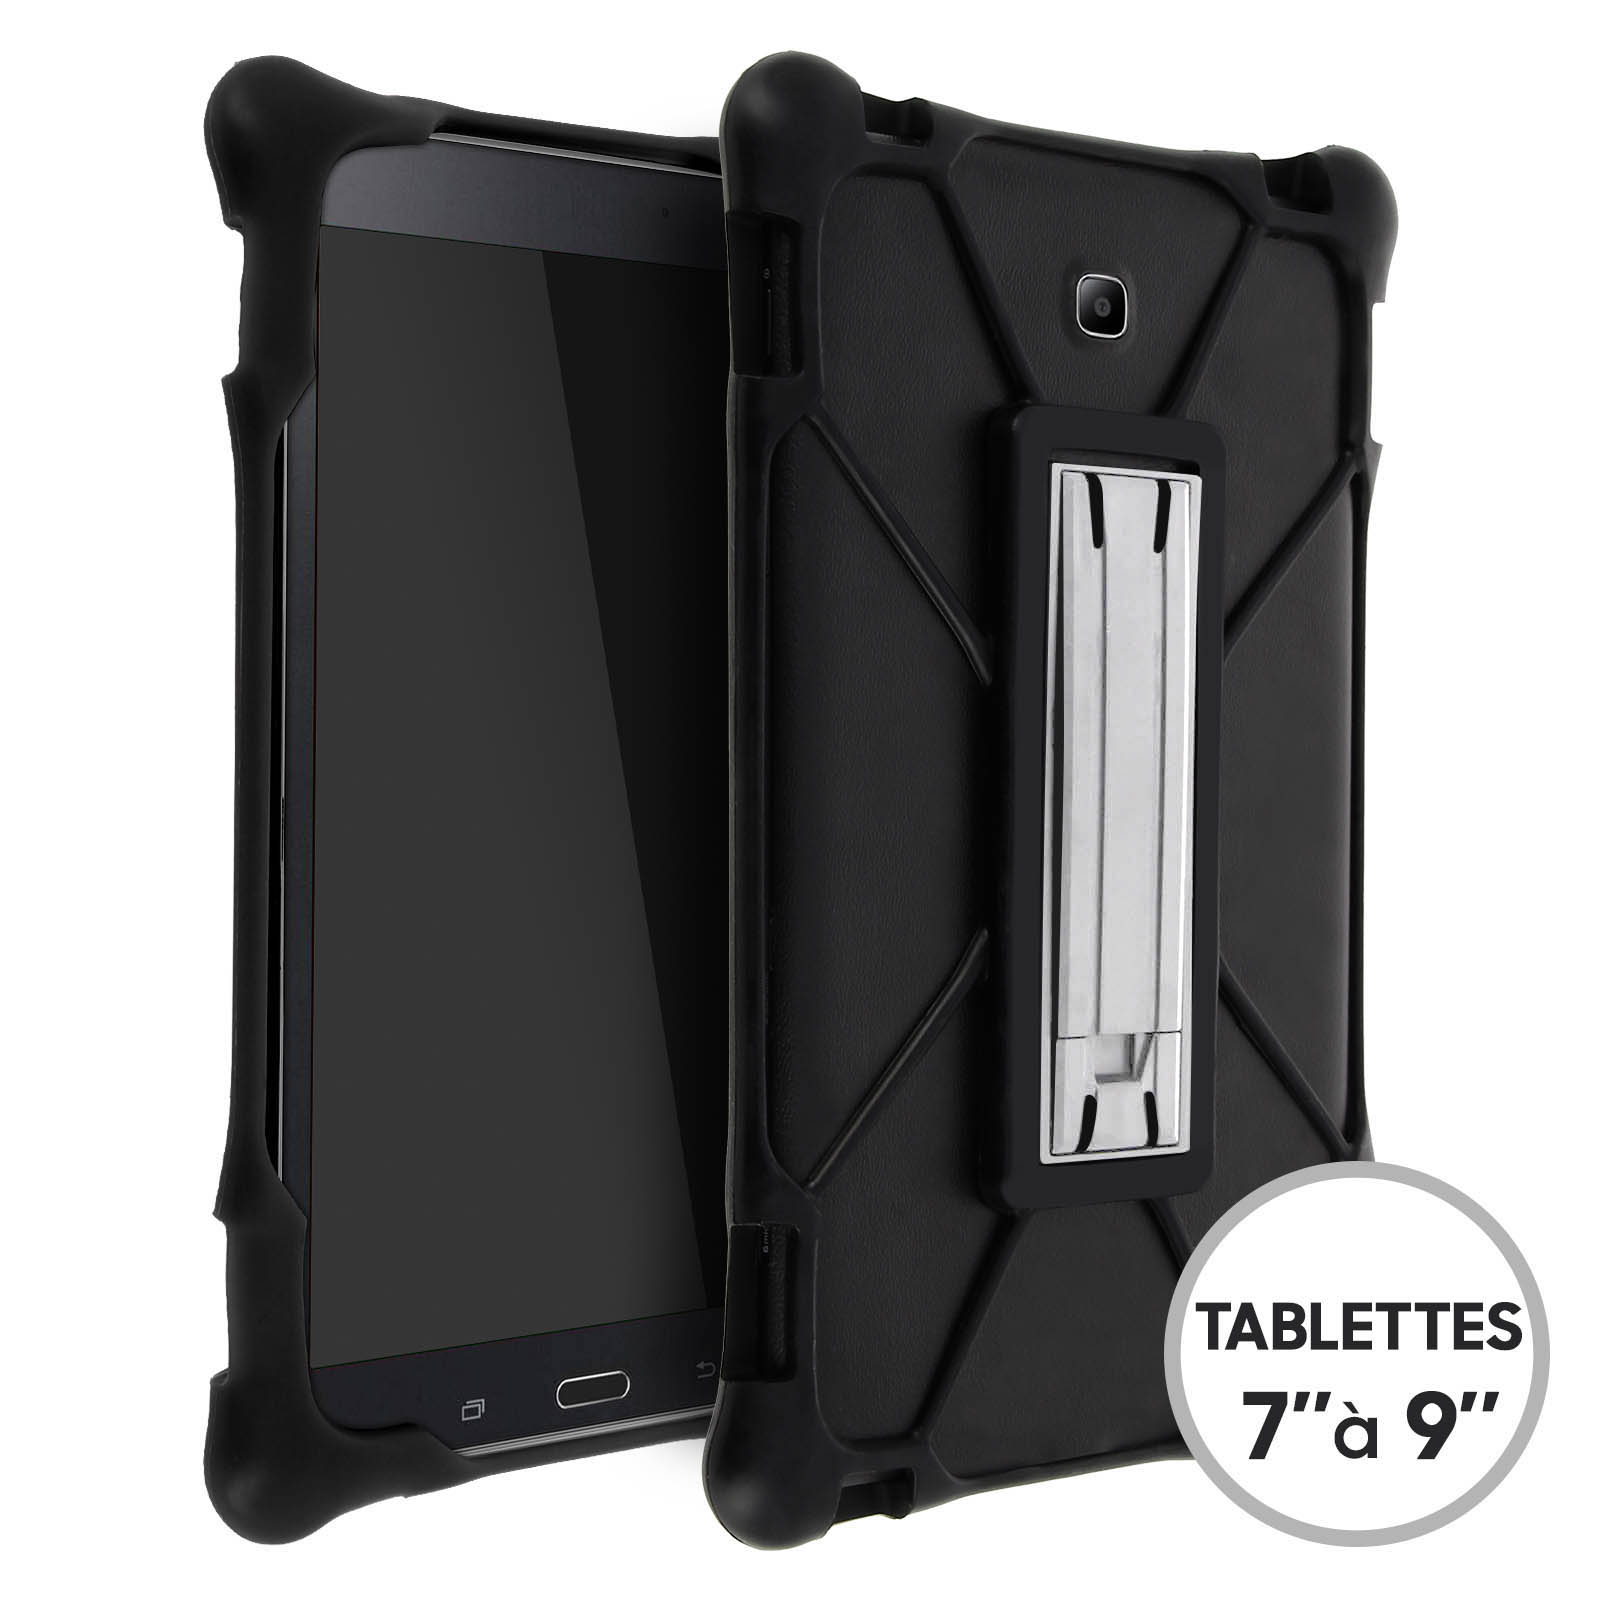 Coque Bumper silicone antichoc + support pour tablettes 7 à 9 pouces - Noir  - Français